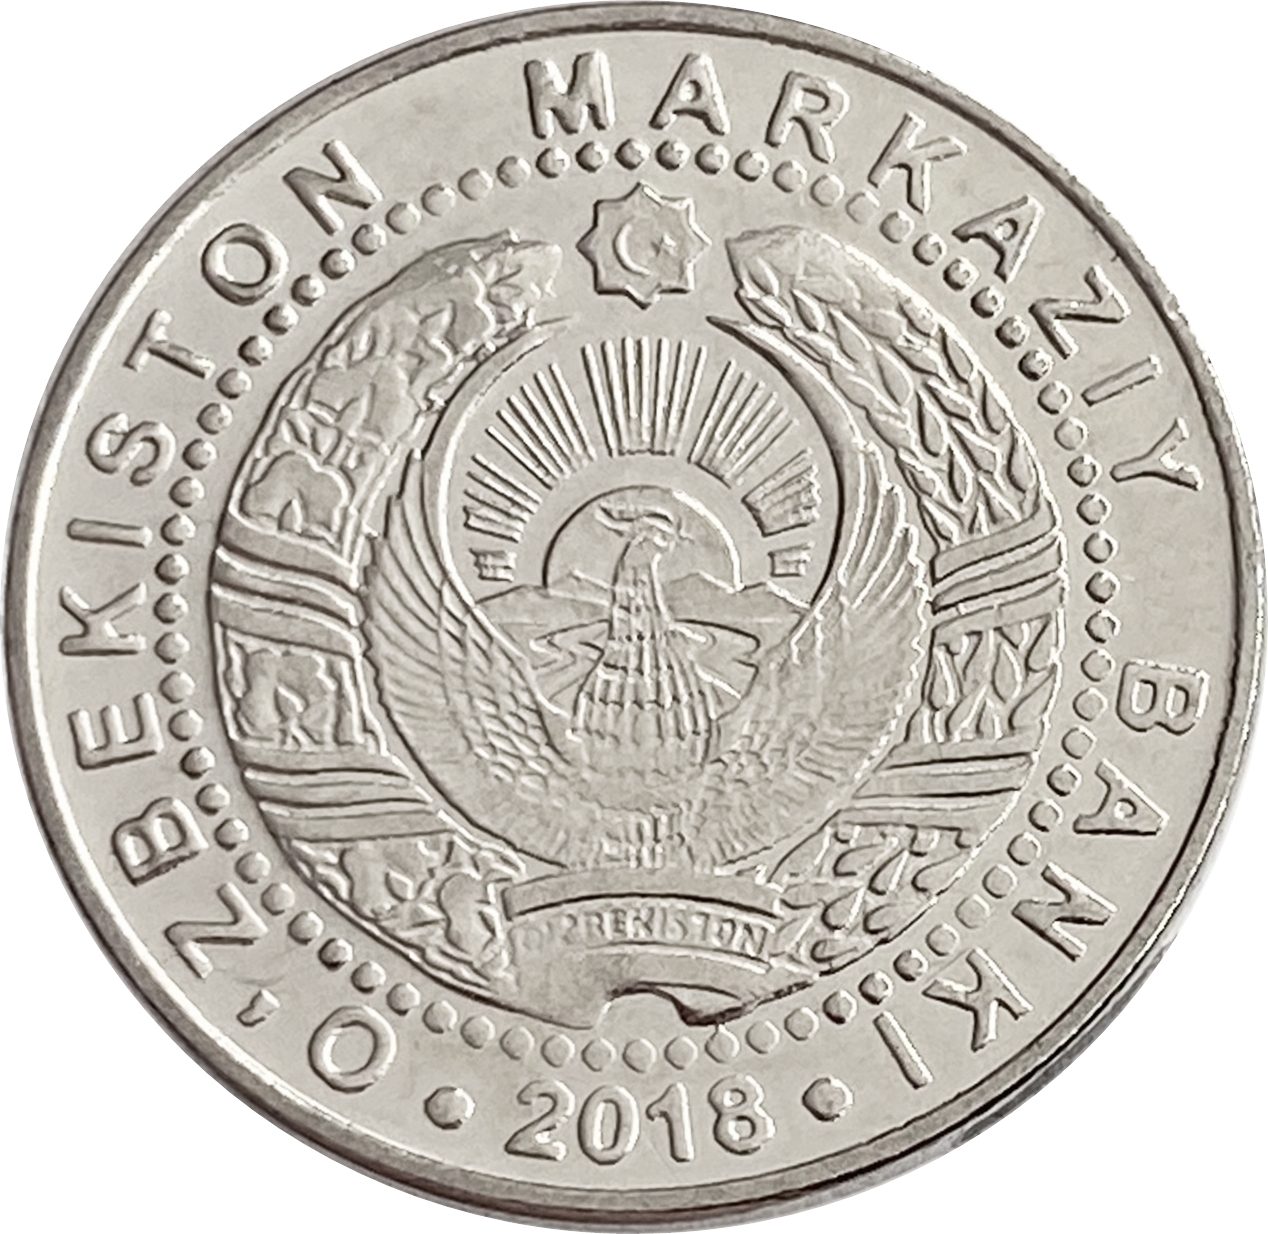 Монеты Узбекистана. Монета 50 сум. Монета Узбекистана 200 сум 2018. Монета 5 сум. Узбекские сумы в москве